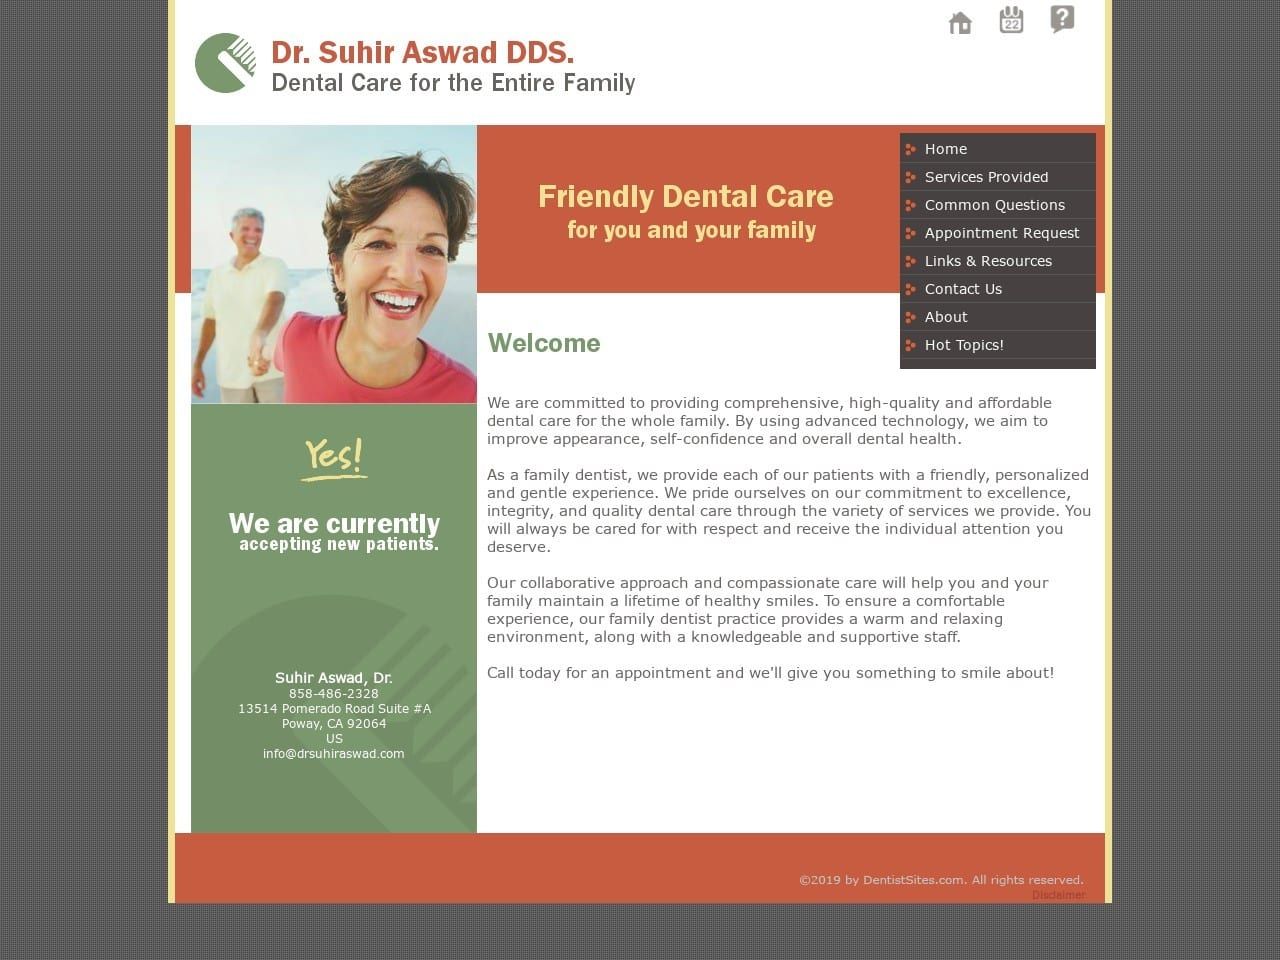 Dr. Suhir Aswad DDS Website Screenshot from drsuhiraswad.com